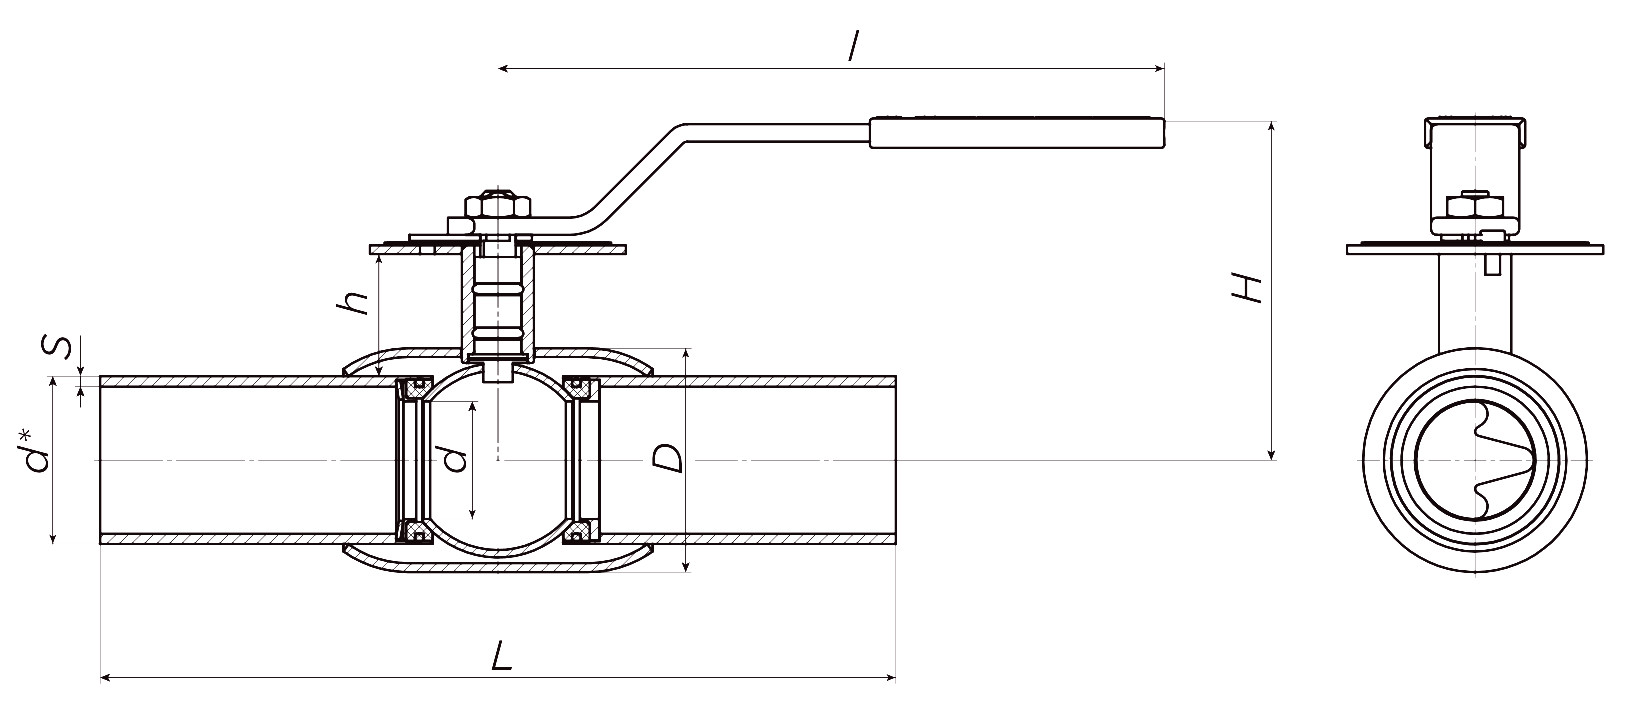 Кран шаровой ALSO КШ.П.BV.025.40-02 Ду25 Ру40 стандартнопроходной, присоединение - под приварку, корпус - сталь 09Г2С, уплотнение - PTFE, управление - ручка-рычаг